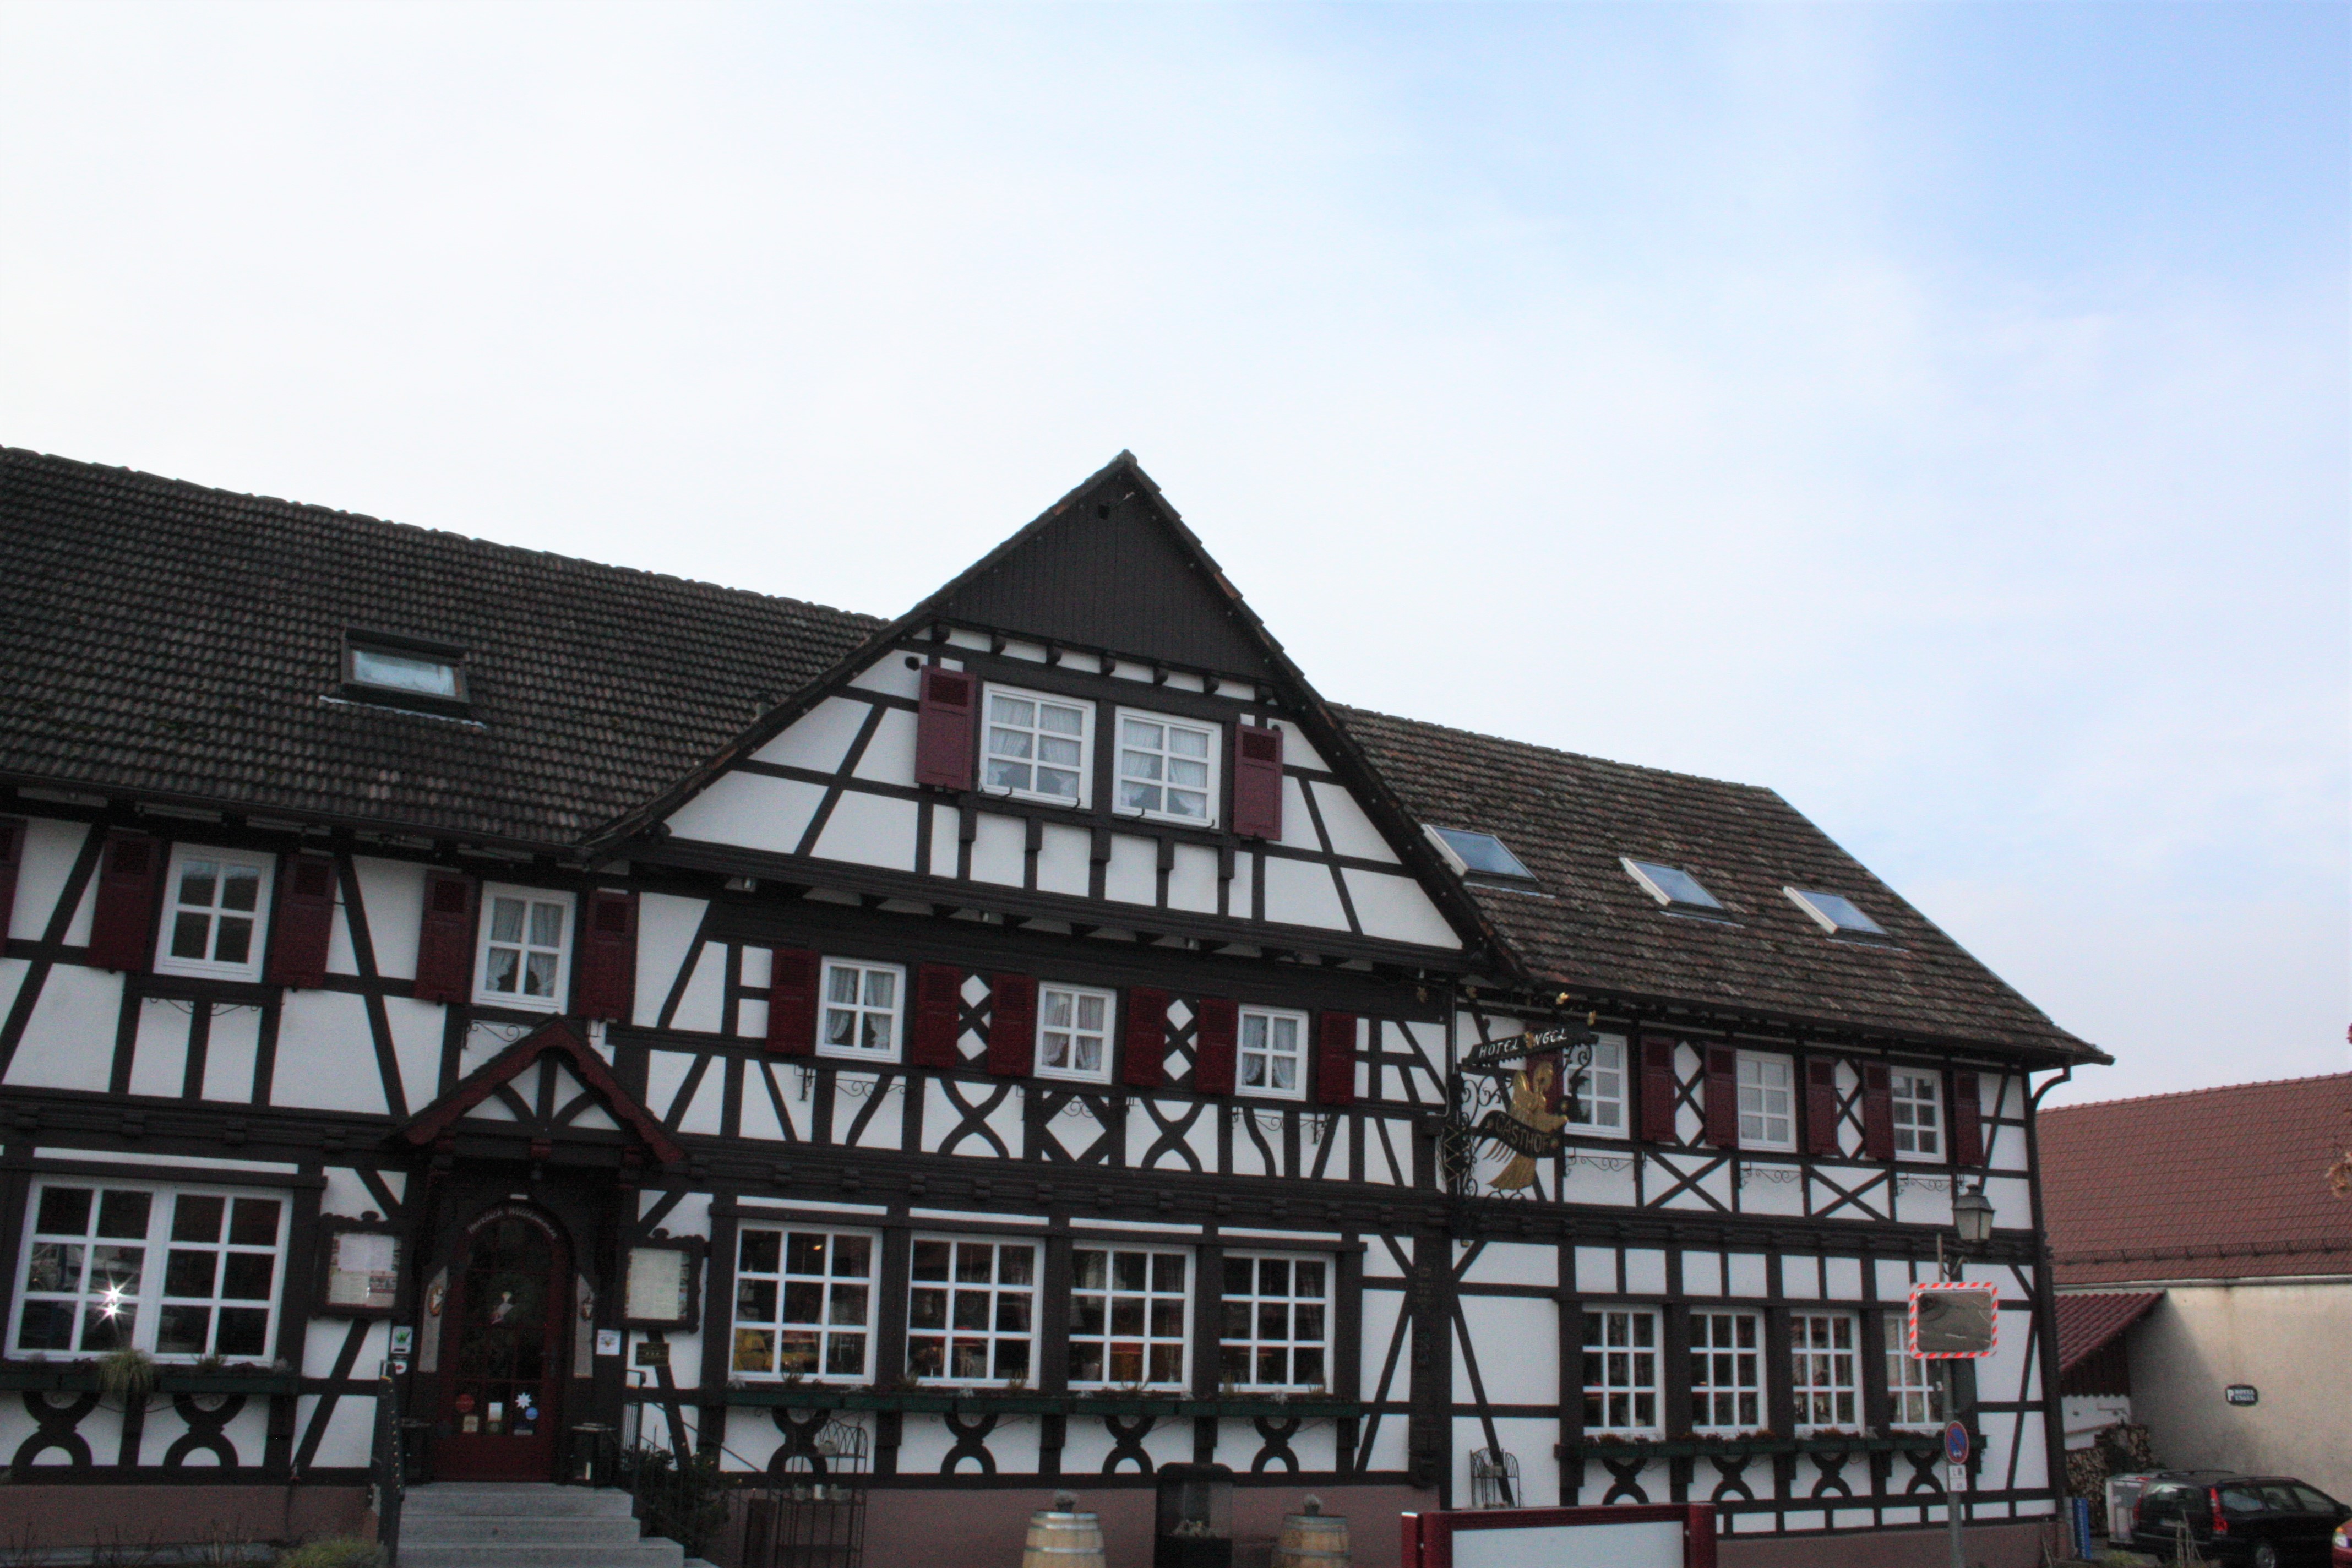 Hotel Engel, Sasbachwalden.
